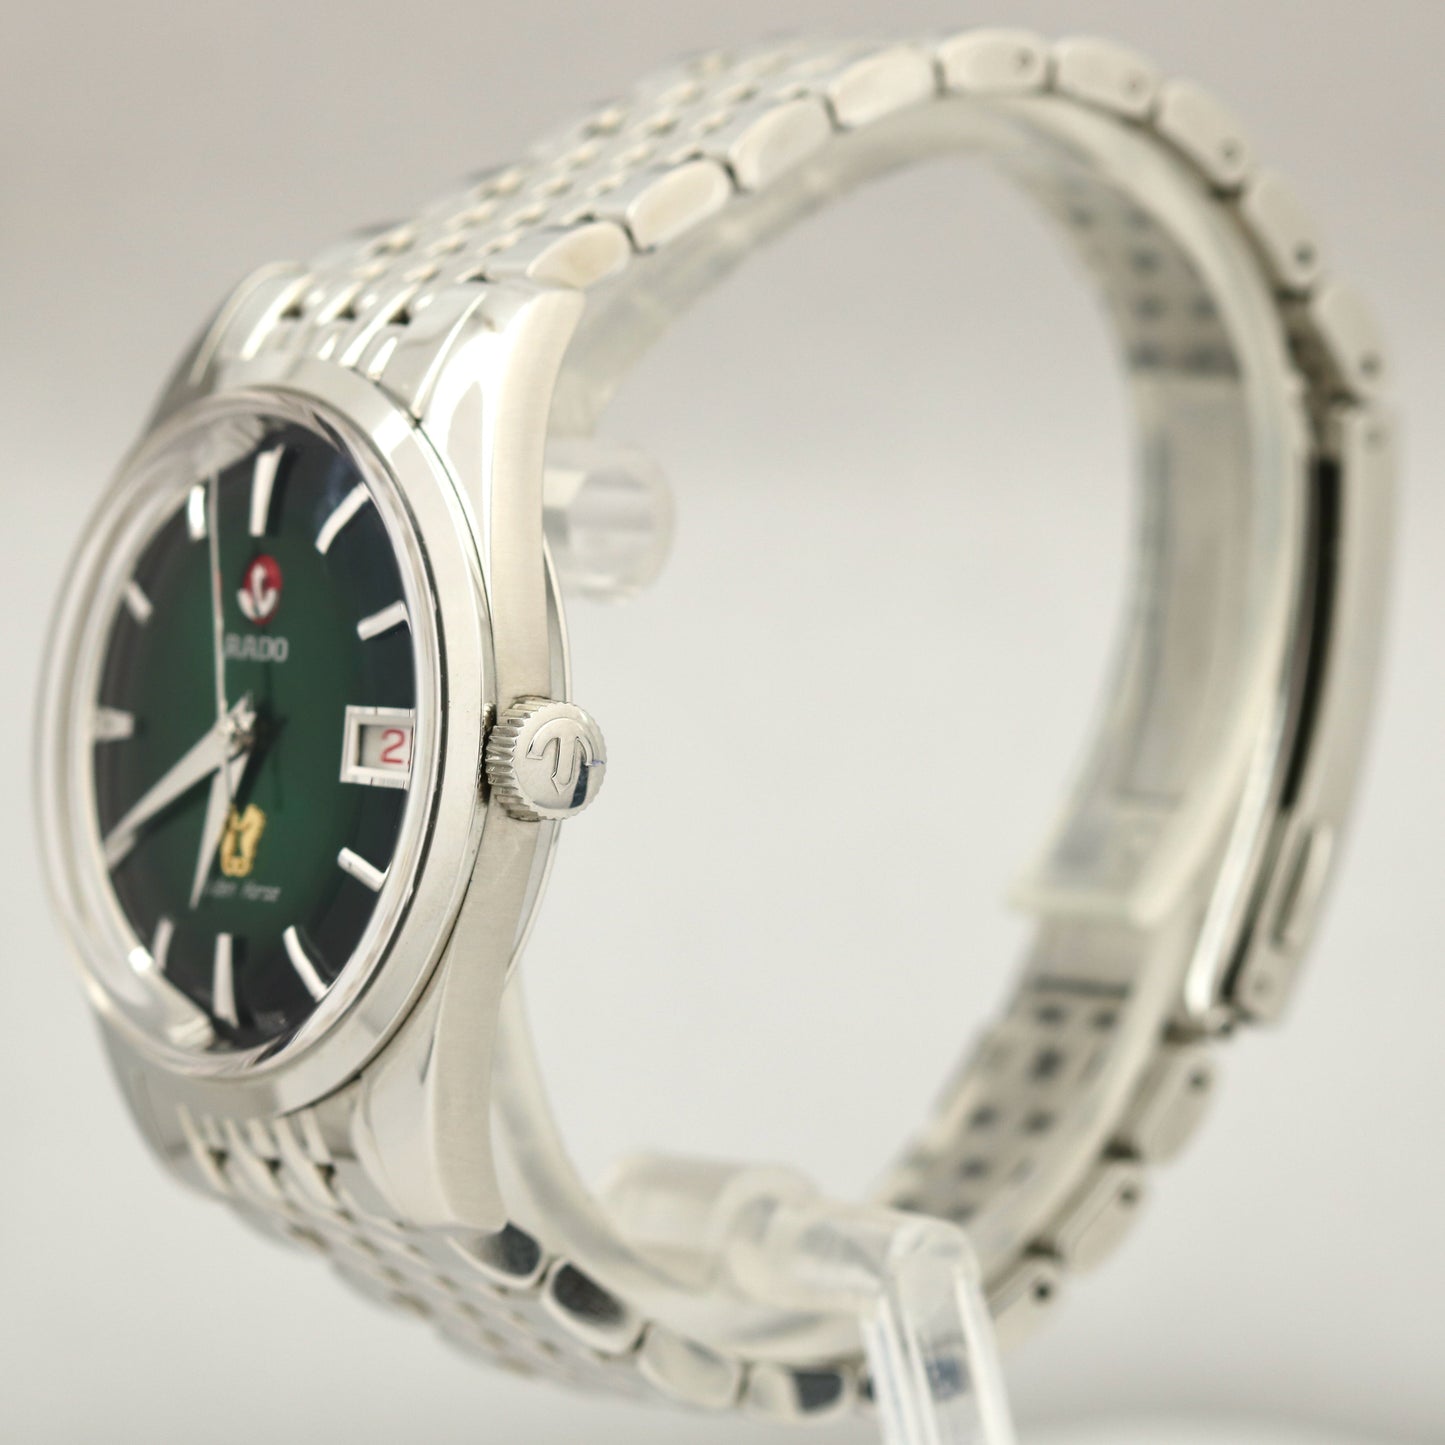 MINT 2020 Rado Switzerland Golden Horse 37mm Stainless Green Vignette Watch B&P